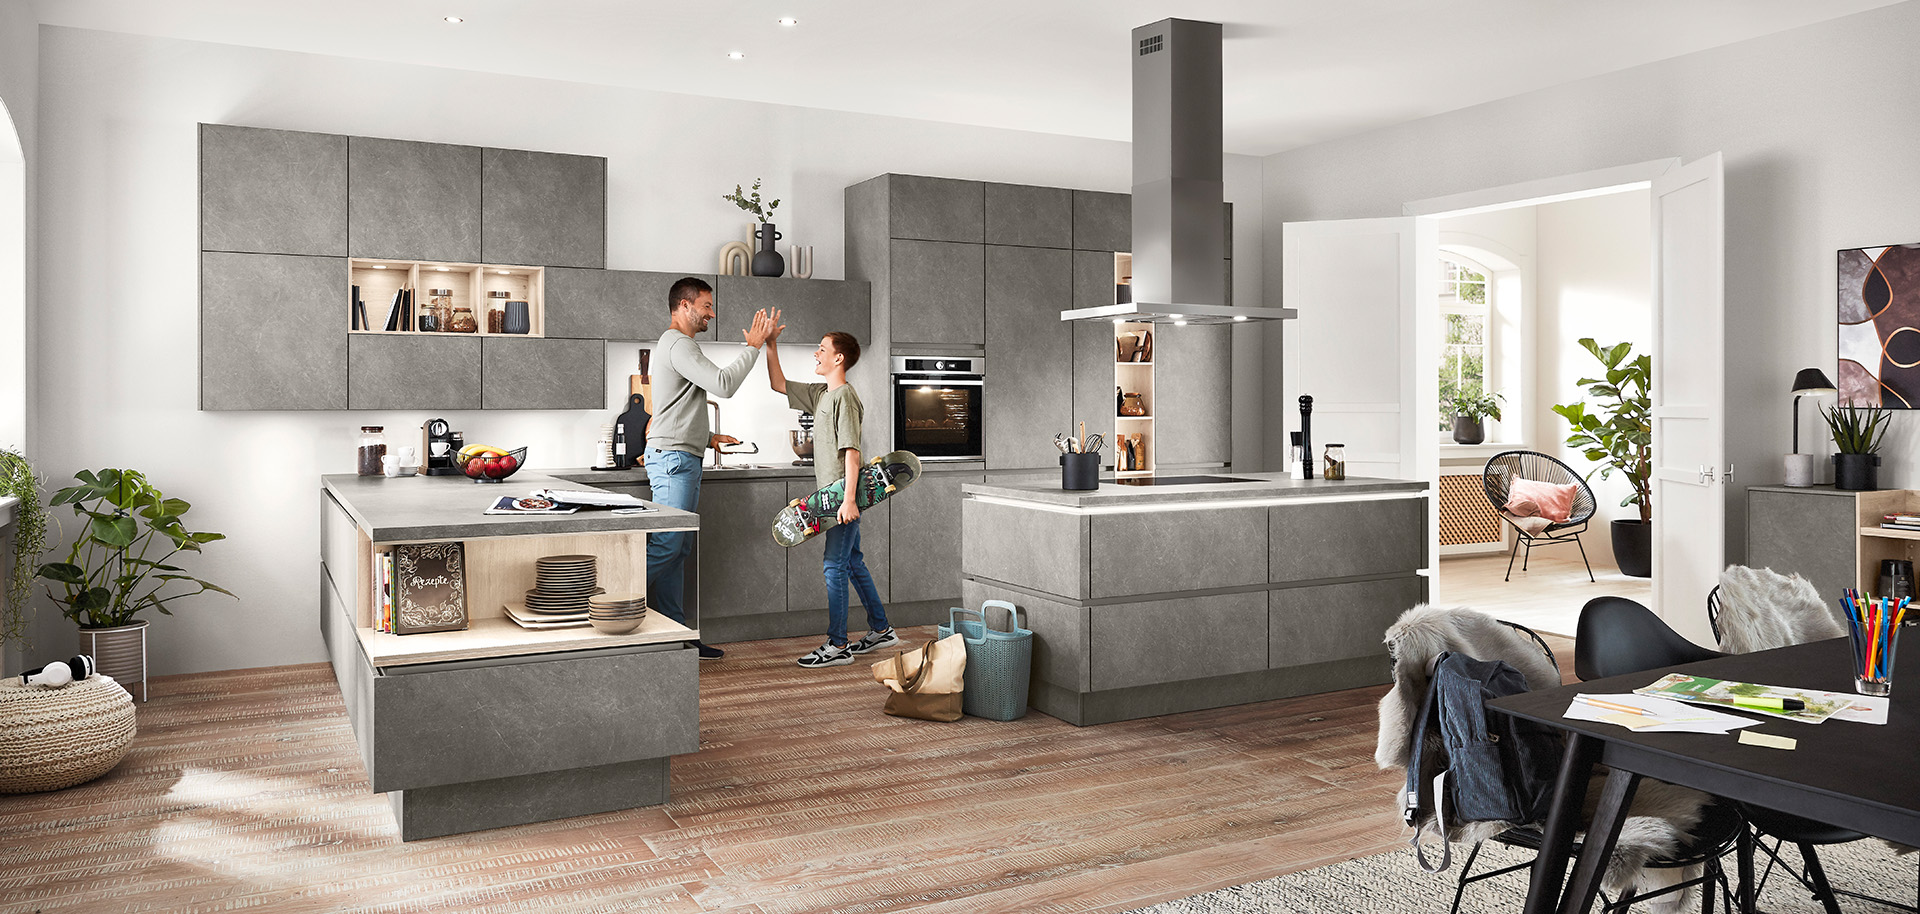 Een moderne, ruime keuken met een stel dat een vrolijk gesprek voert, omringd door strakke grijze kasten en elegant decor onder natuurlijk licht.